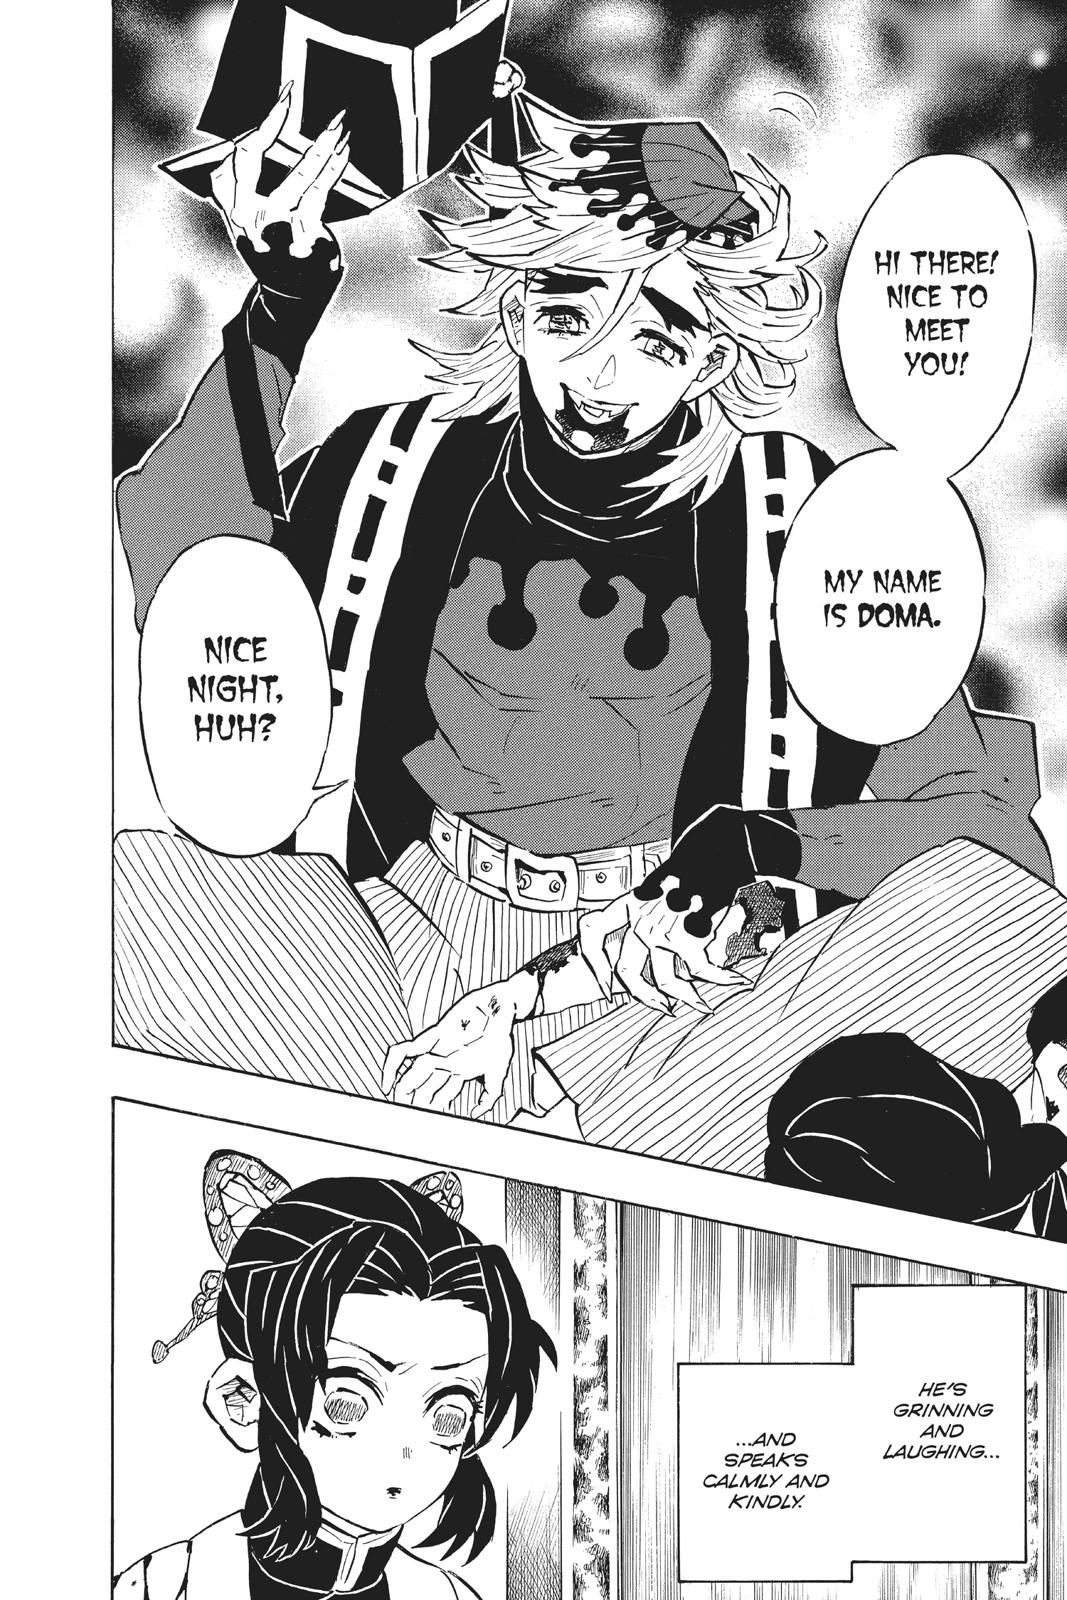 Demon Slayer Manga Manga Chapter - 141 - image 4